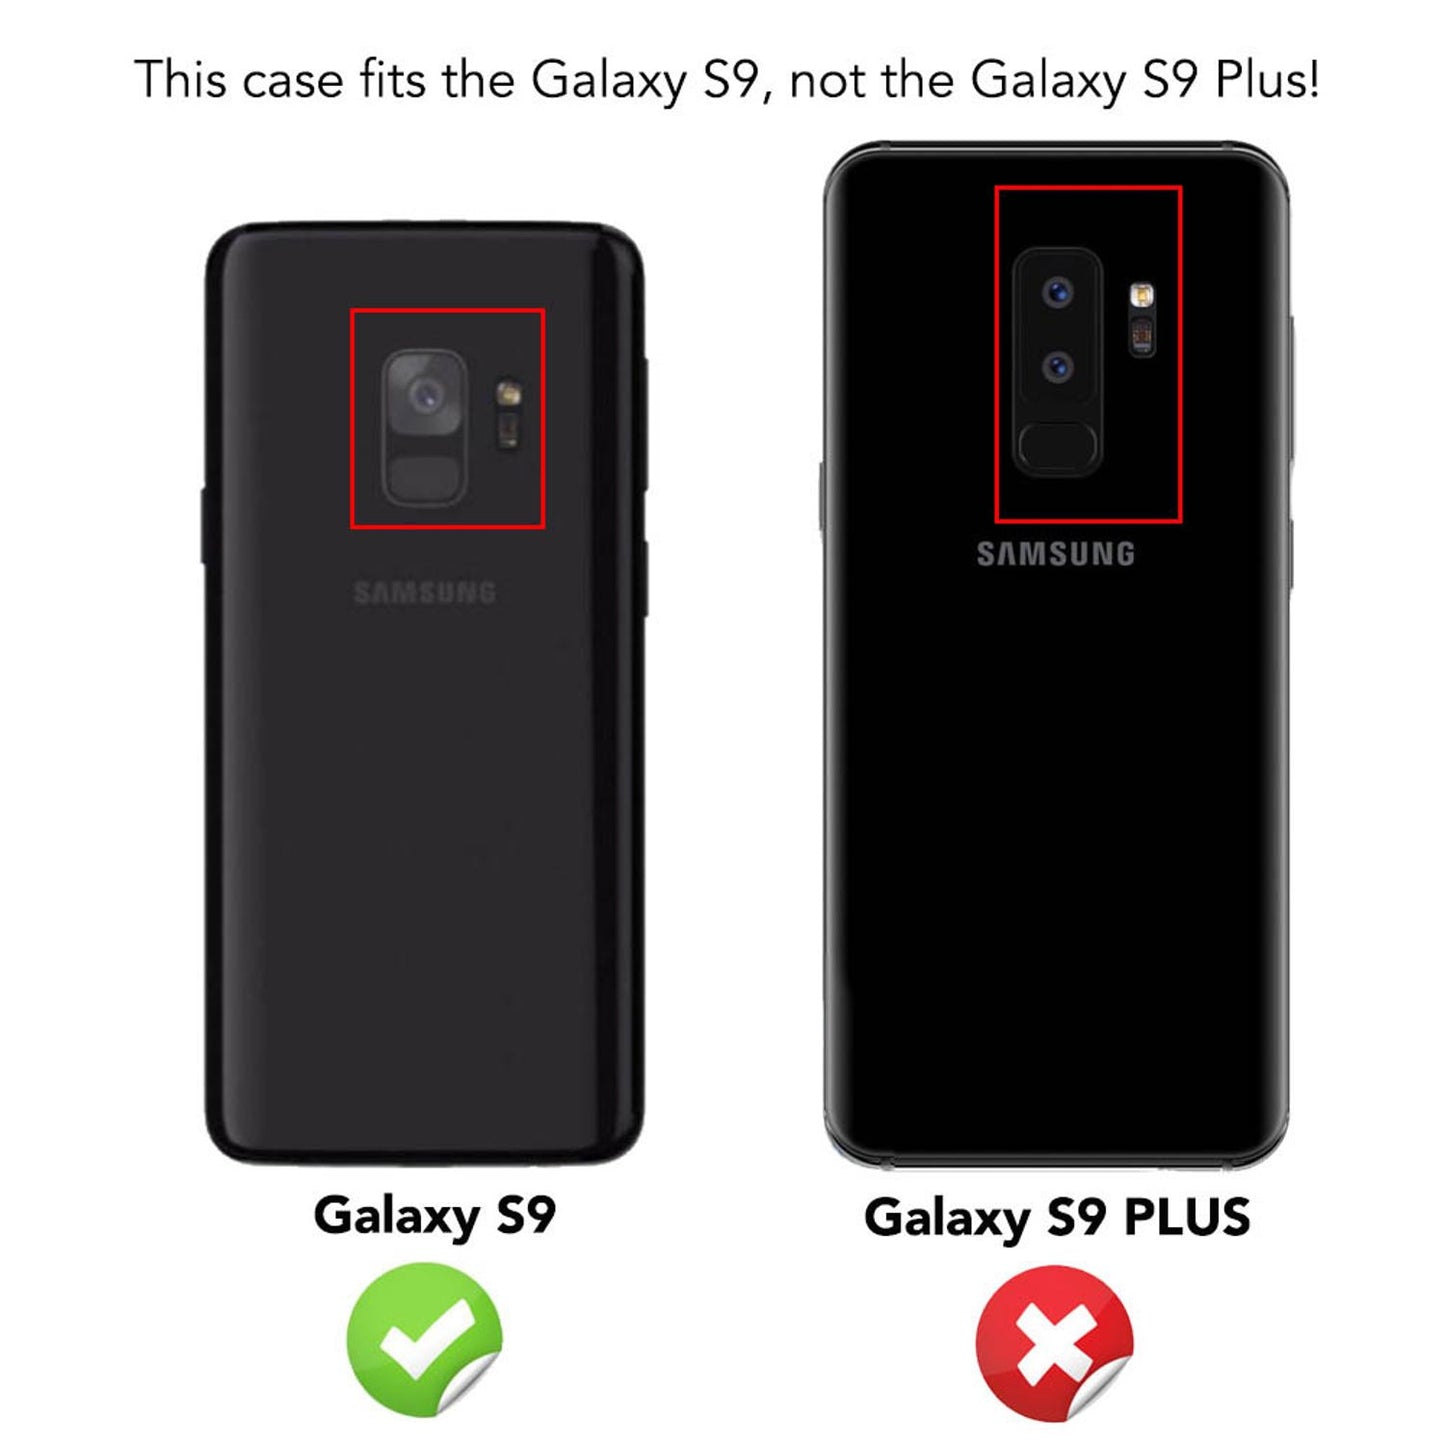 NALIA Hülle für Samsung Galaxy S9, Slim Handyhülle Cover Case Schutzhülle Bumper